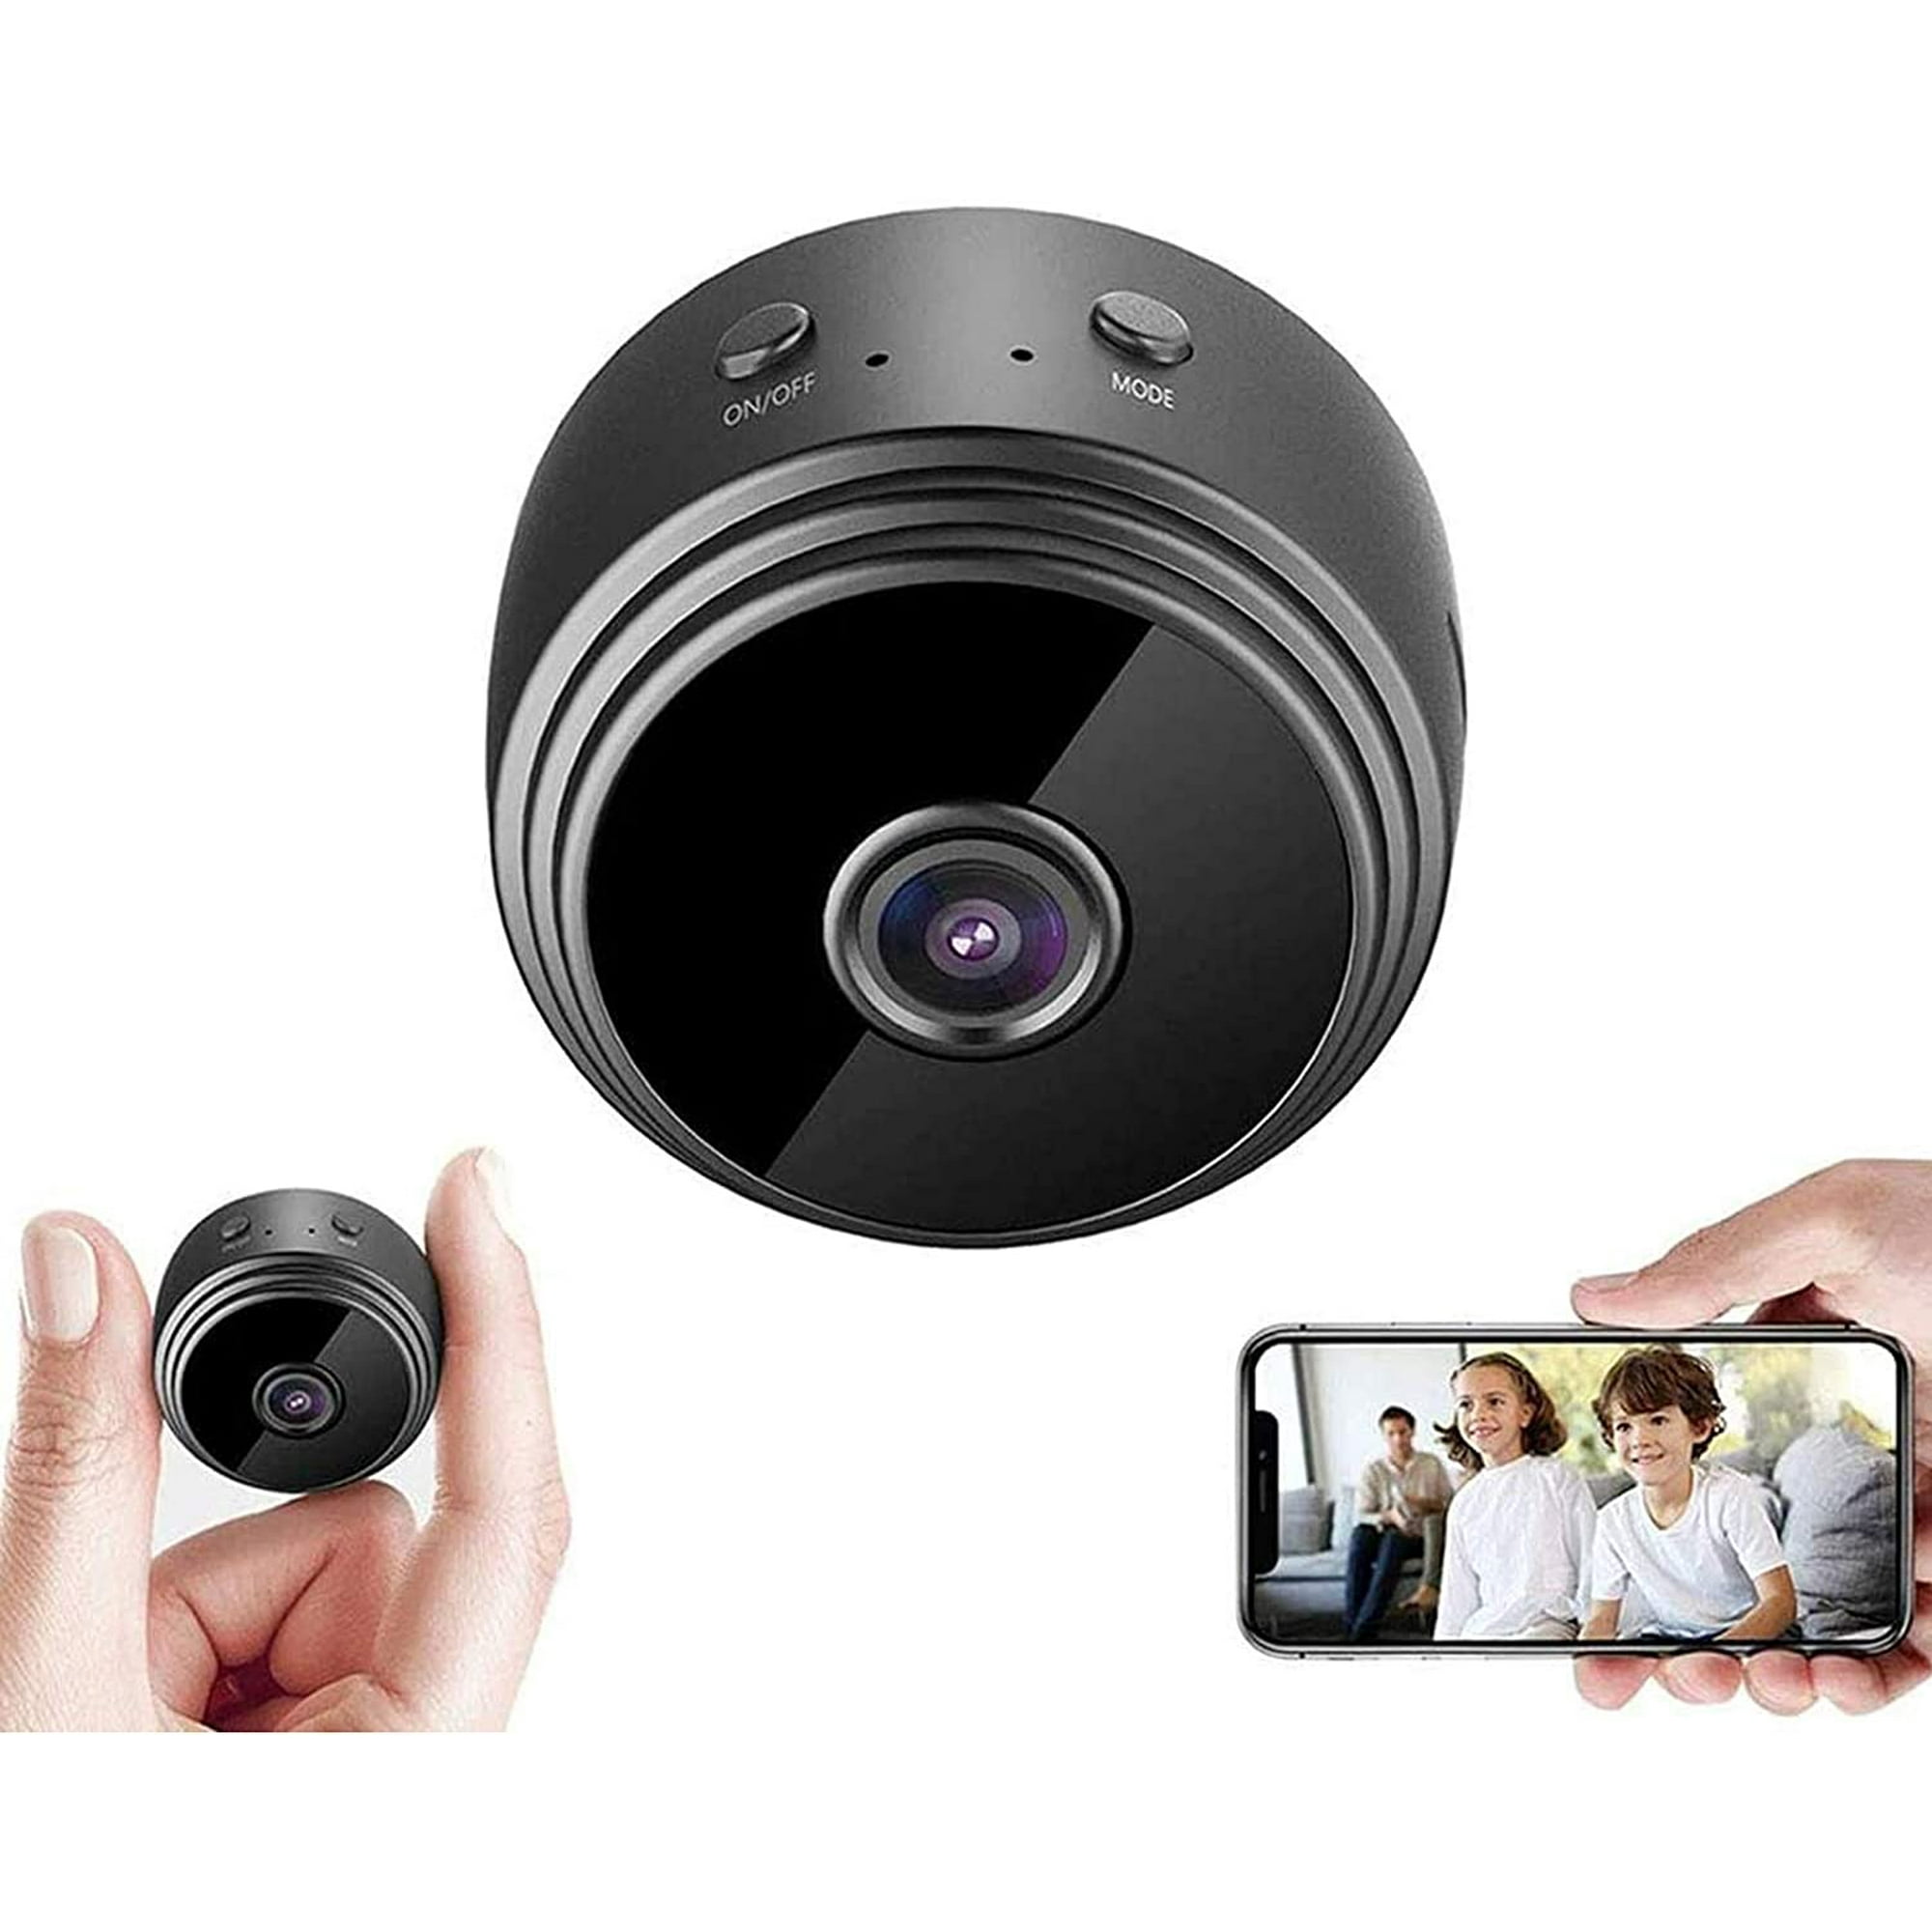 Laboom Mini cámara espía WiFi cámaras ocultas inalámbrica HD 1080P cámara  espía pequeña cámara portátil con aplicación de teléfono celular, visión